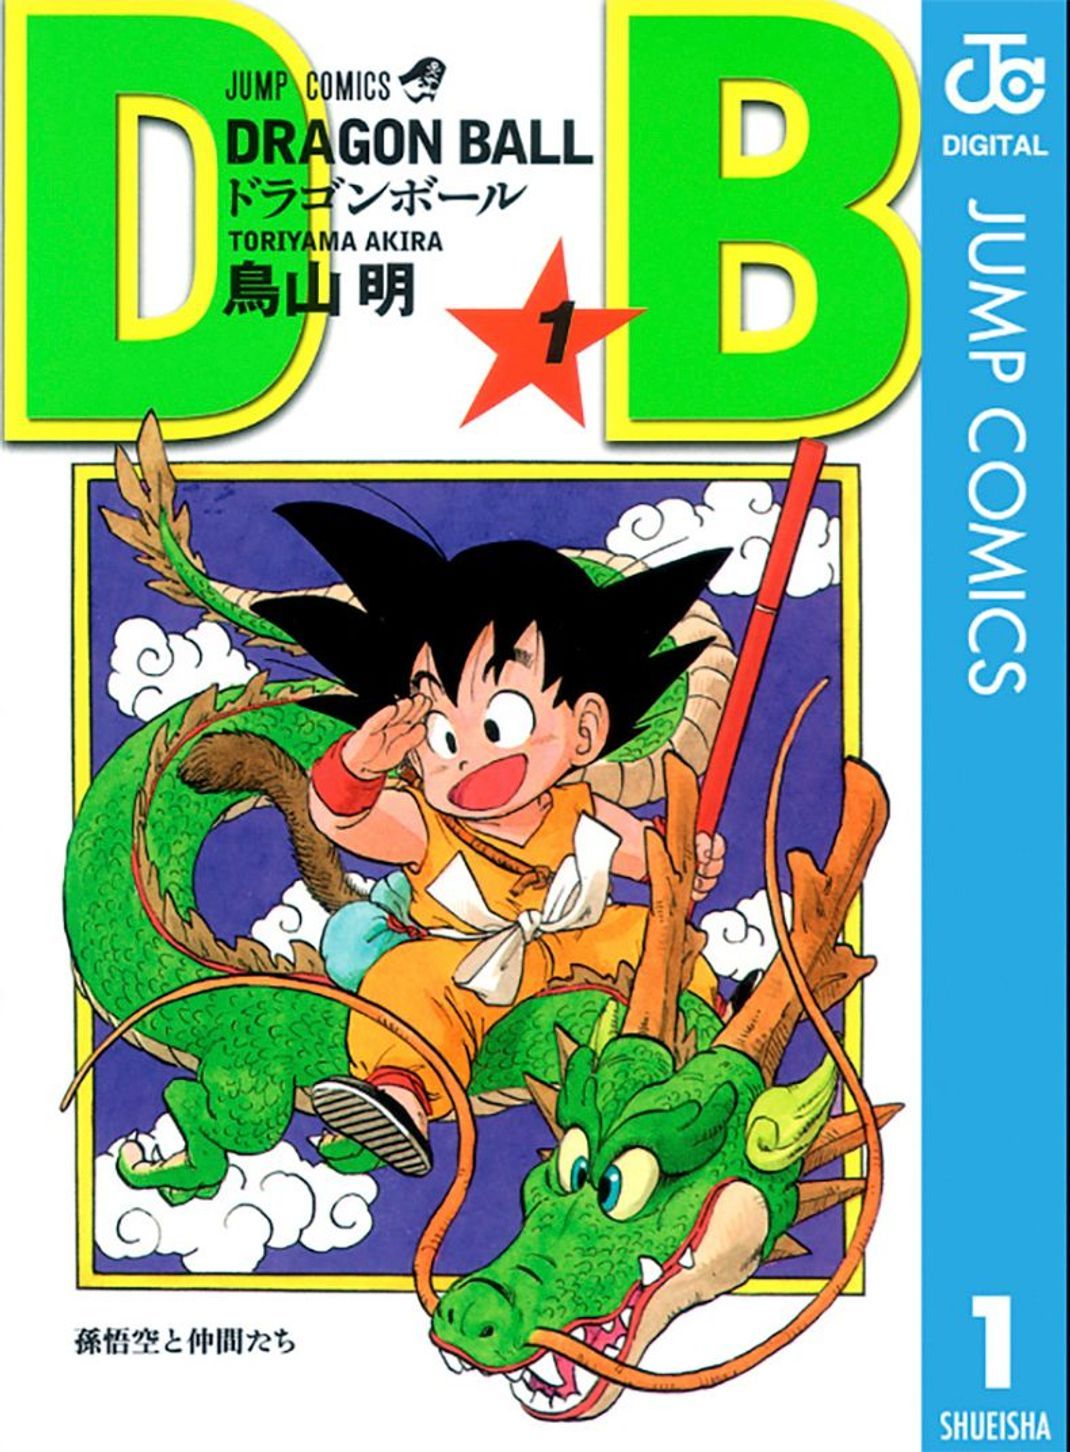 Der Schöpfer der Manga-Serie "Dragon Ball“, Akira Toriyama, ist gestorben.